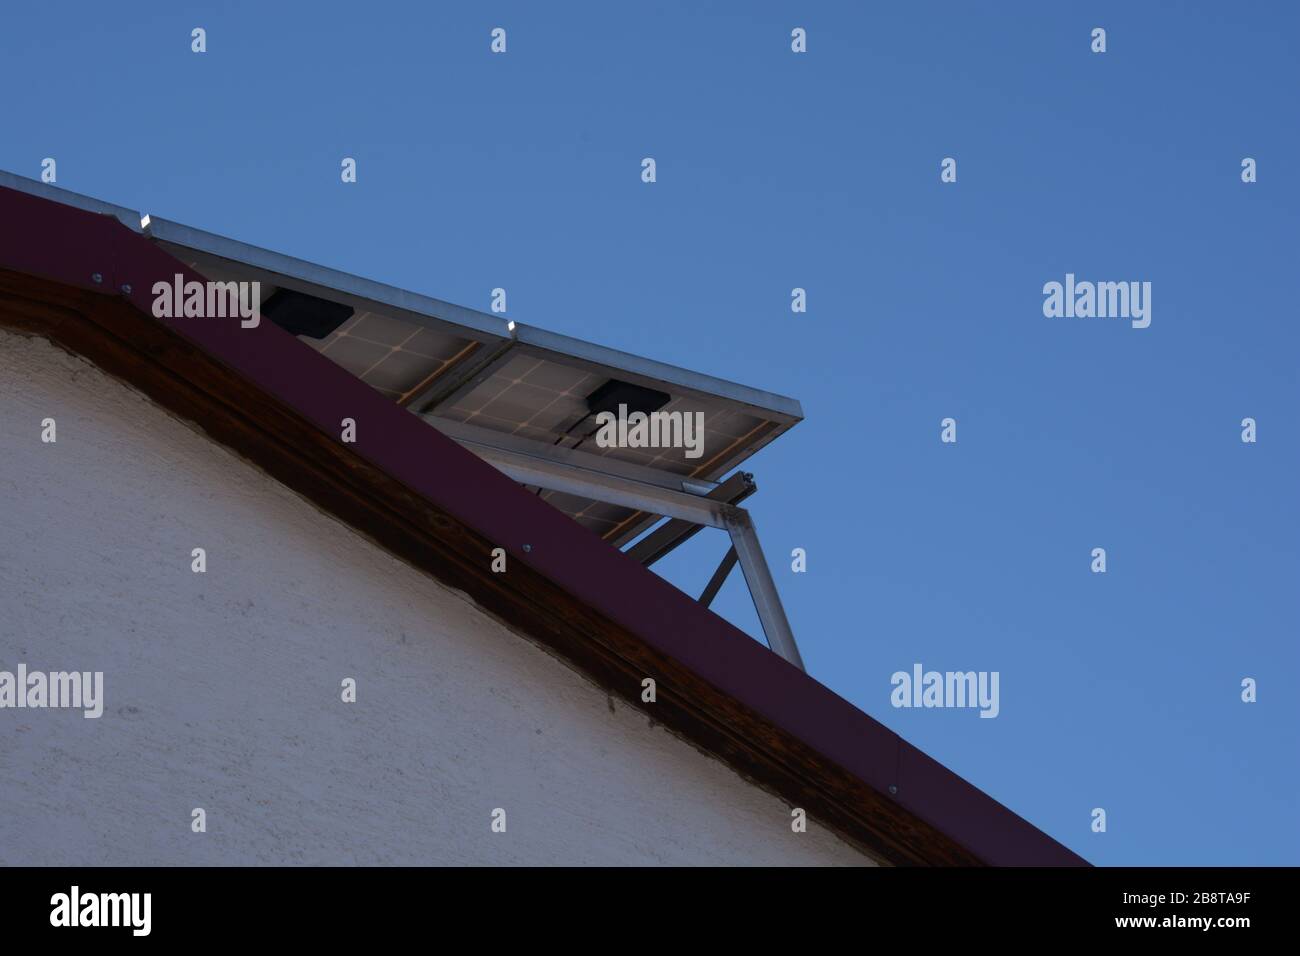 installazione del pannello solare sul tetto con sfondo blu trasparente, pannello fotovoltaico visto dal basso sul tetto Foto Stock